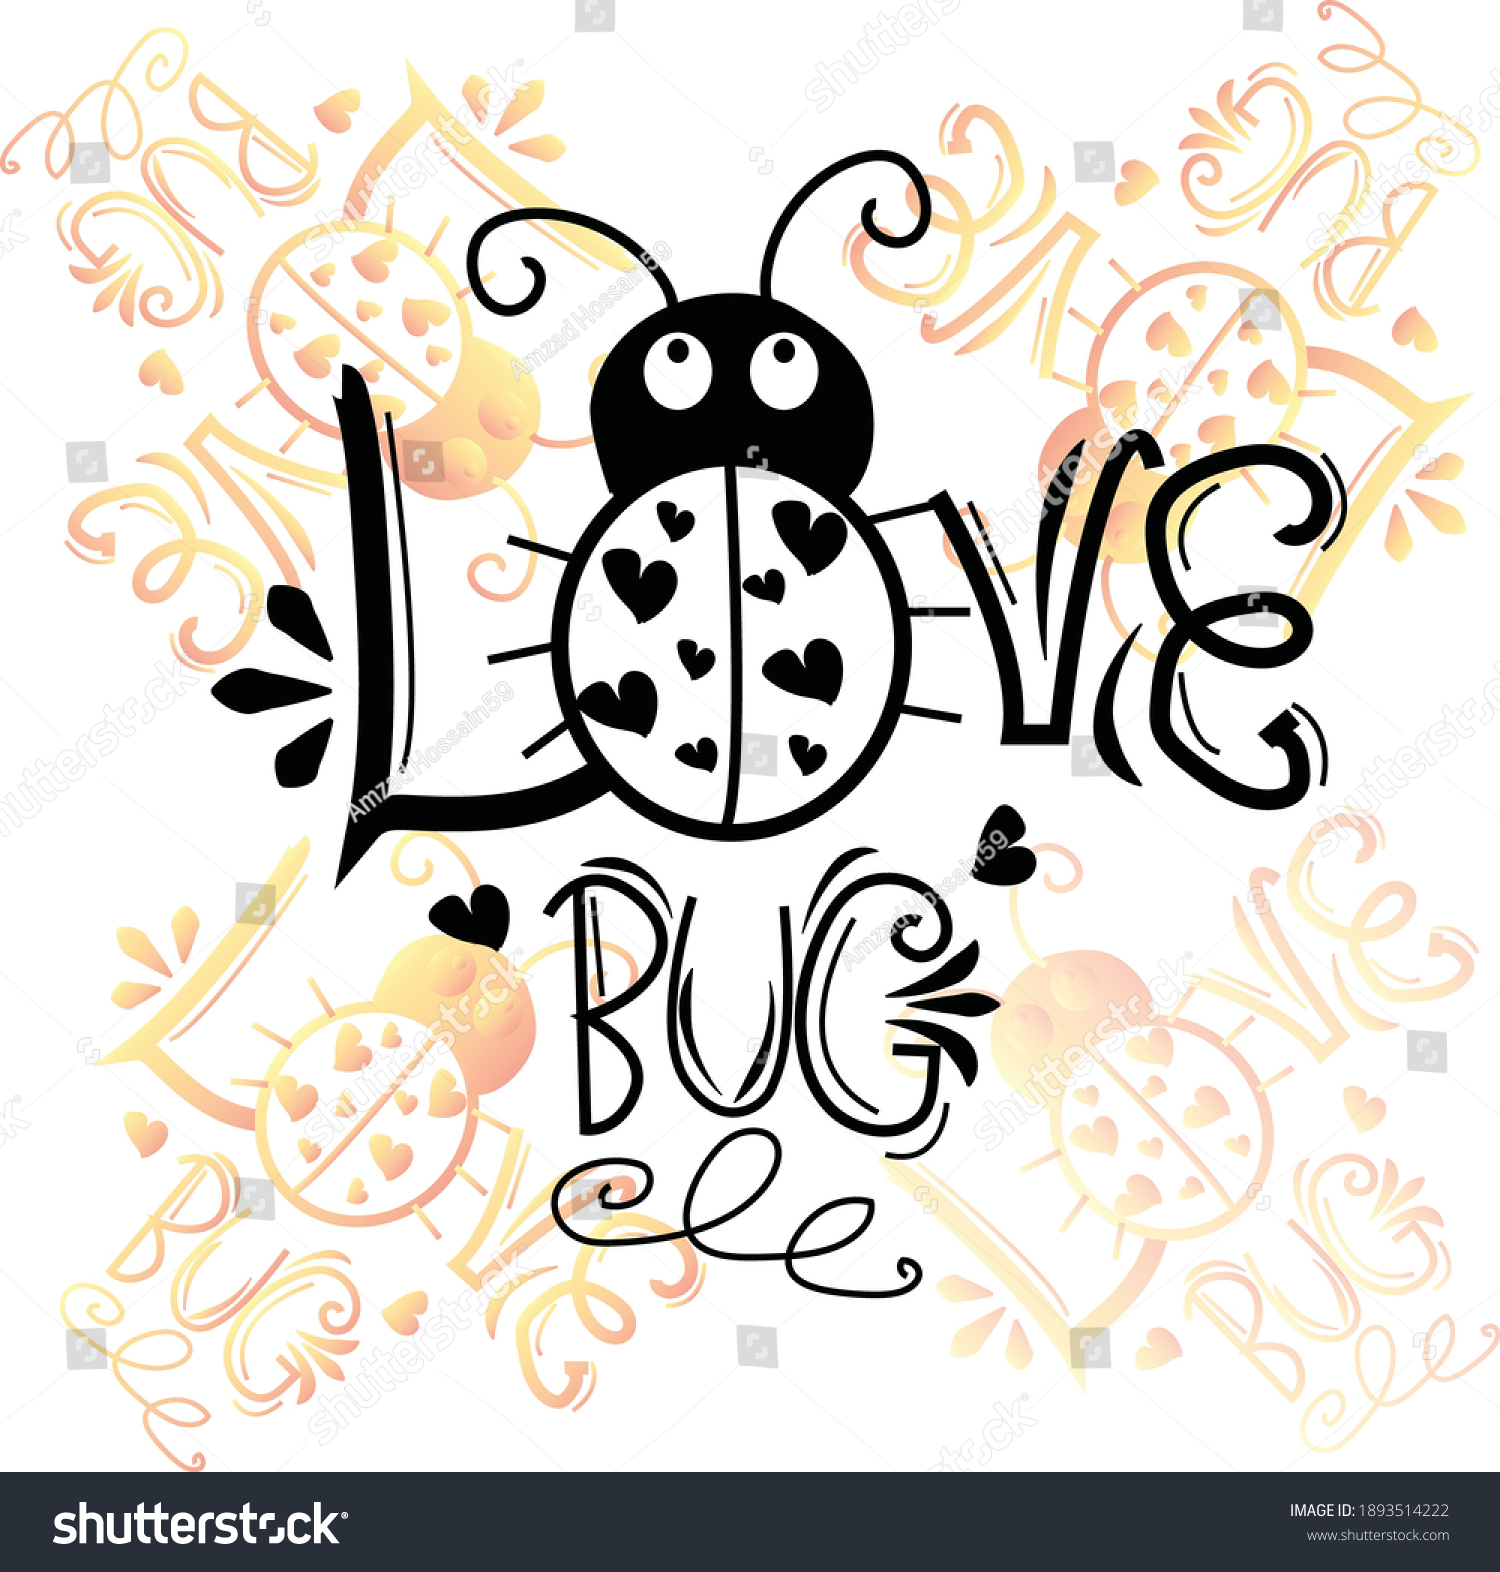 SVG of love bug svg,flowers svg,design vector transparent background svg